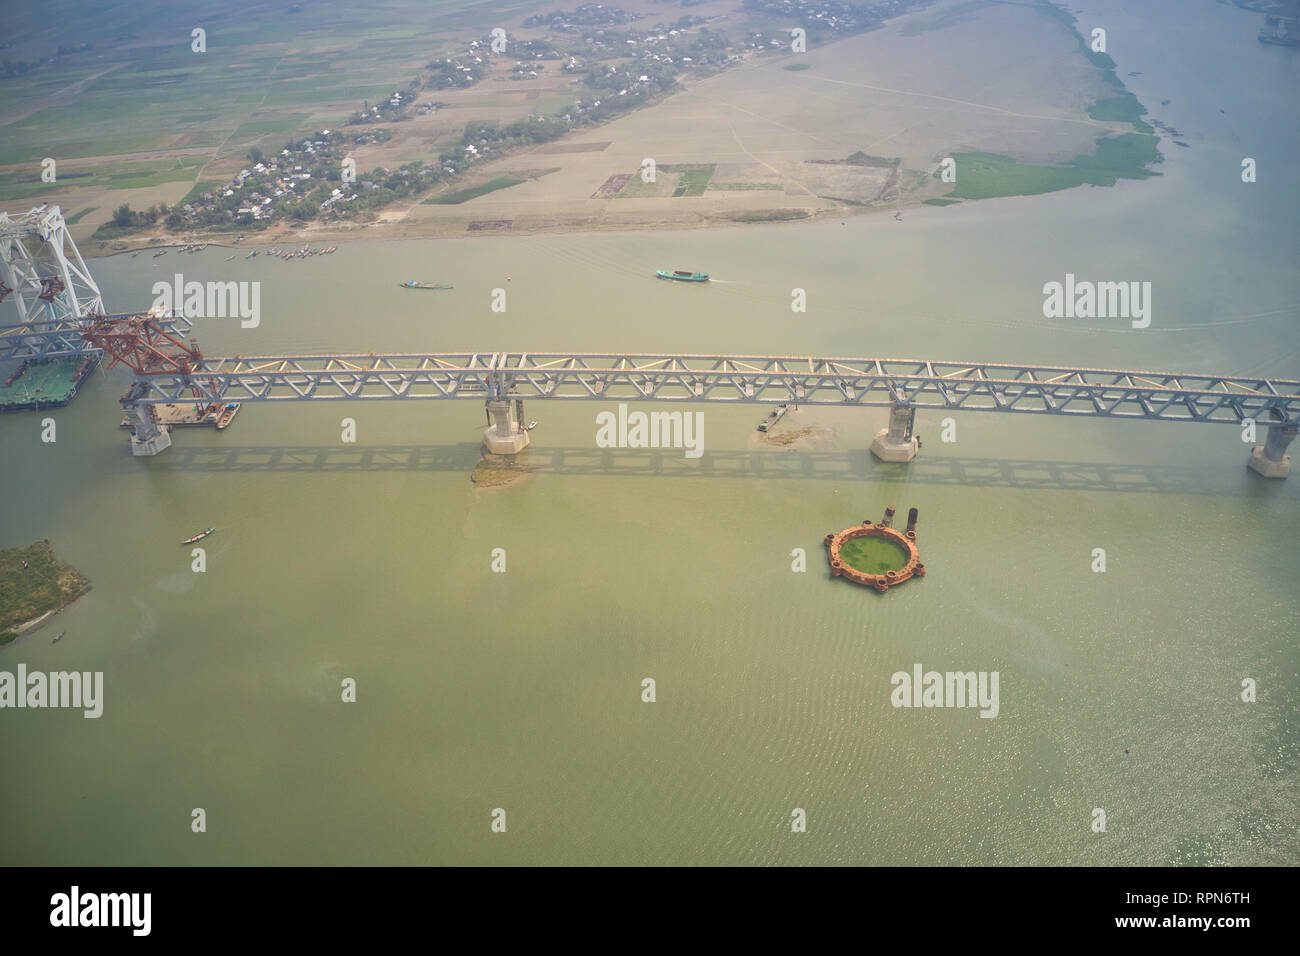 65 Prozent Bau von Padma Brücke abgeschlossen ist Stockfoto